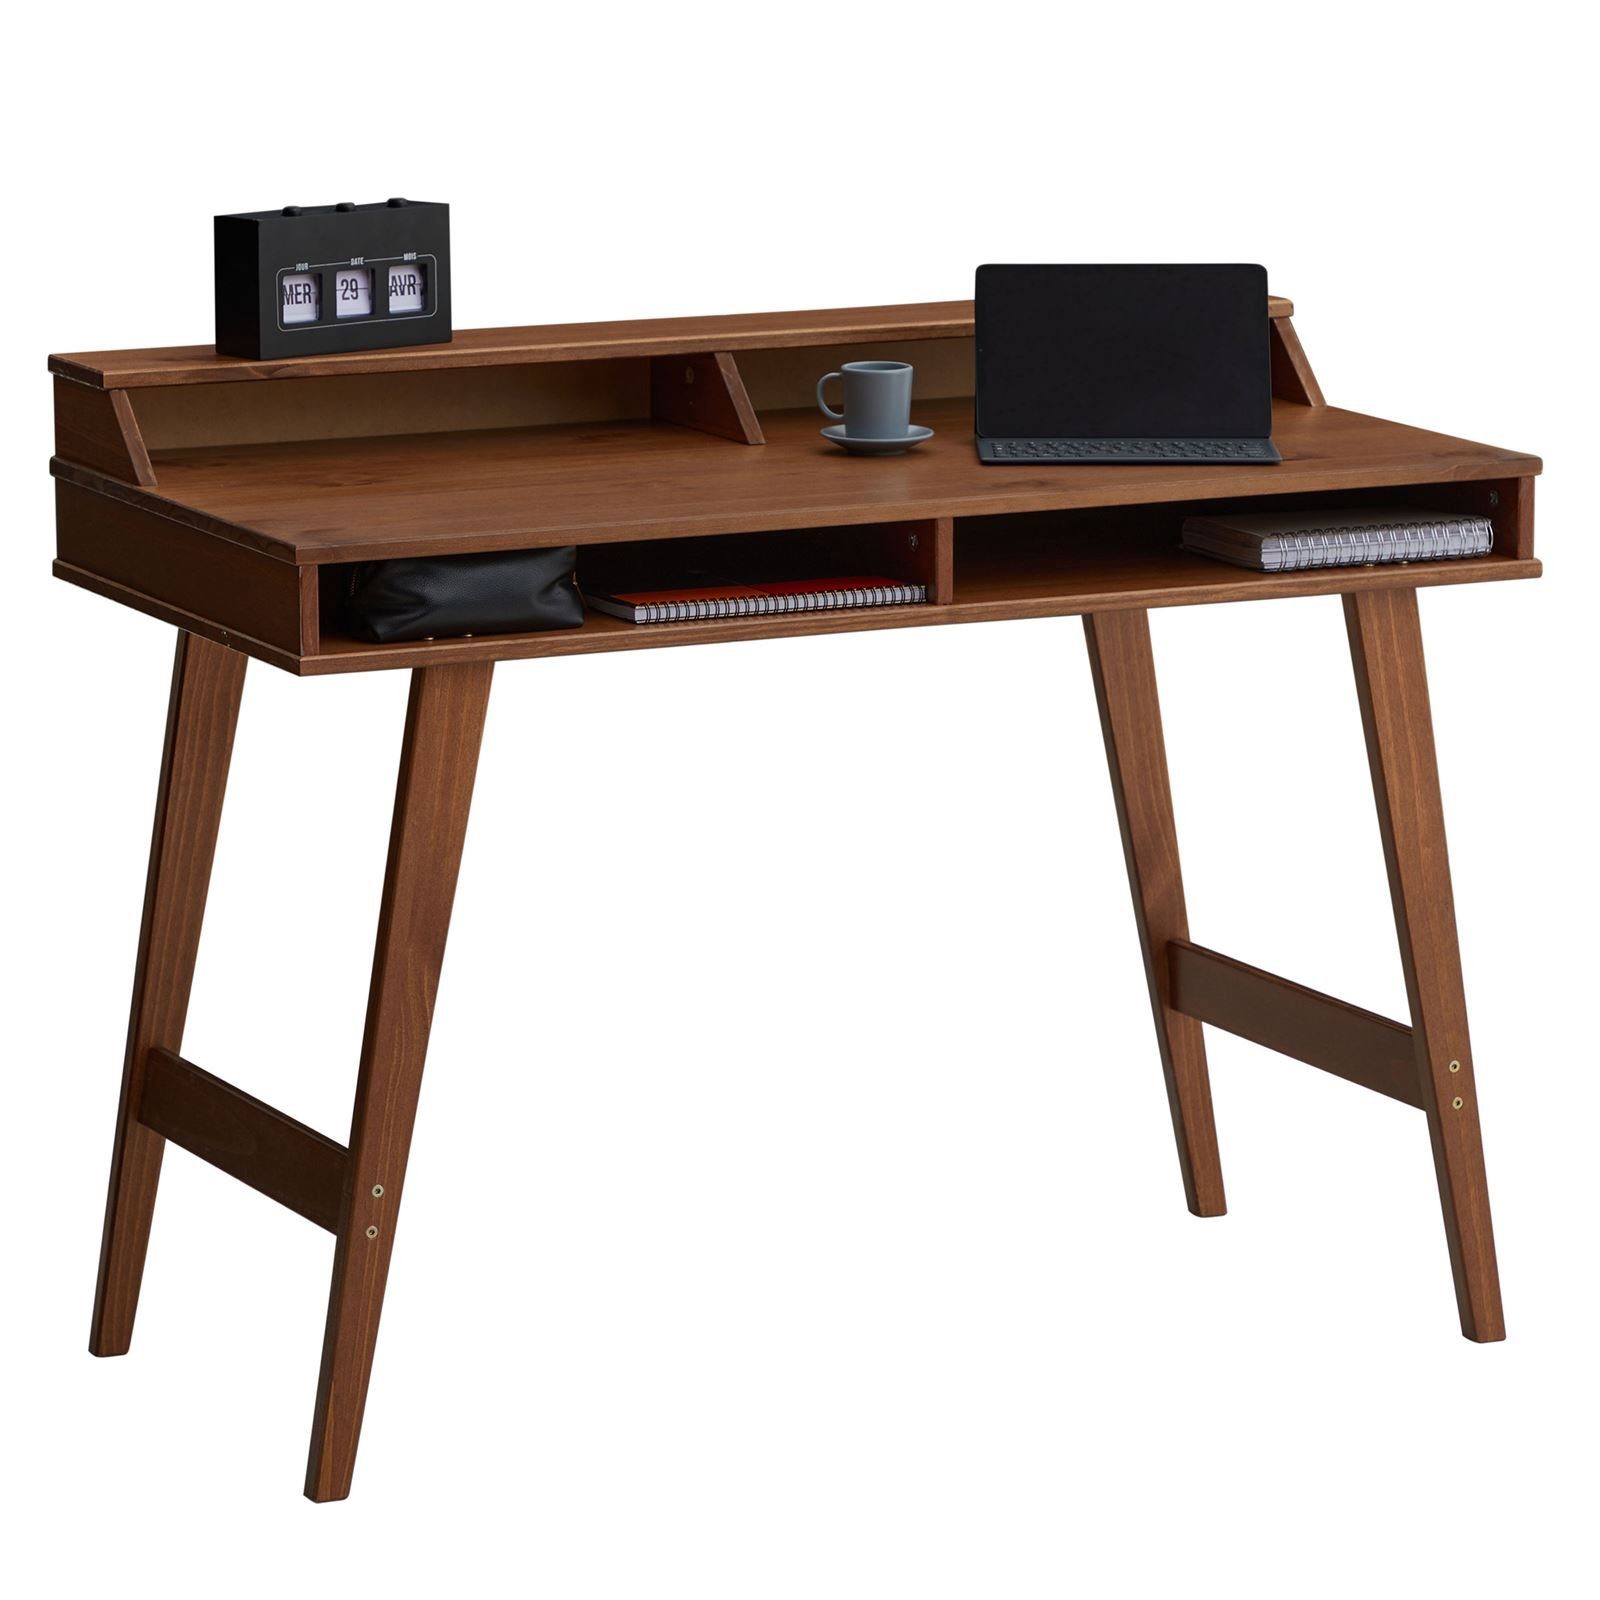 IDIMEX Schreibtisch LUNA, Schreibtisch Arbeitstisch Bürotisch 2 offenen Fächern Aufsatz